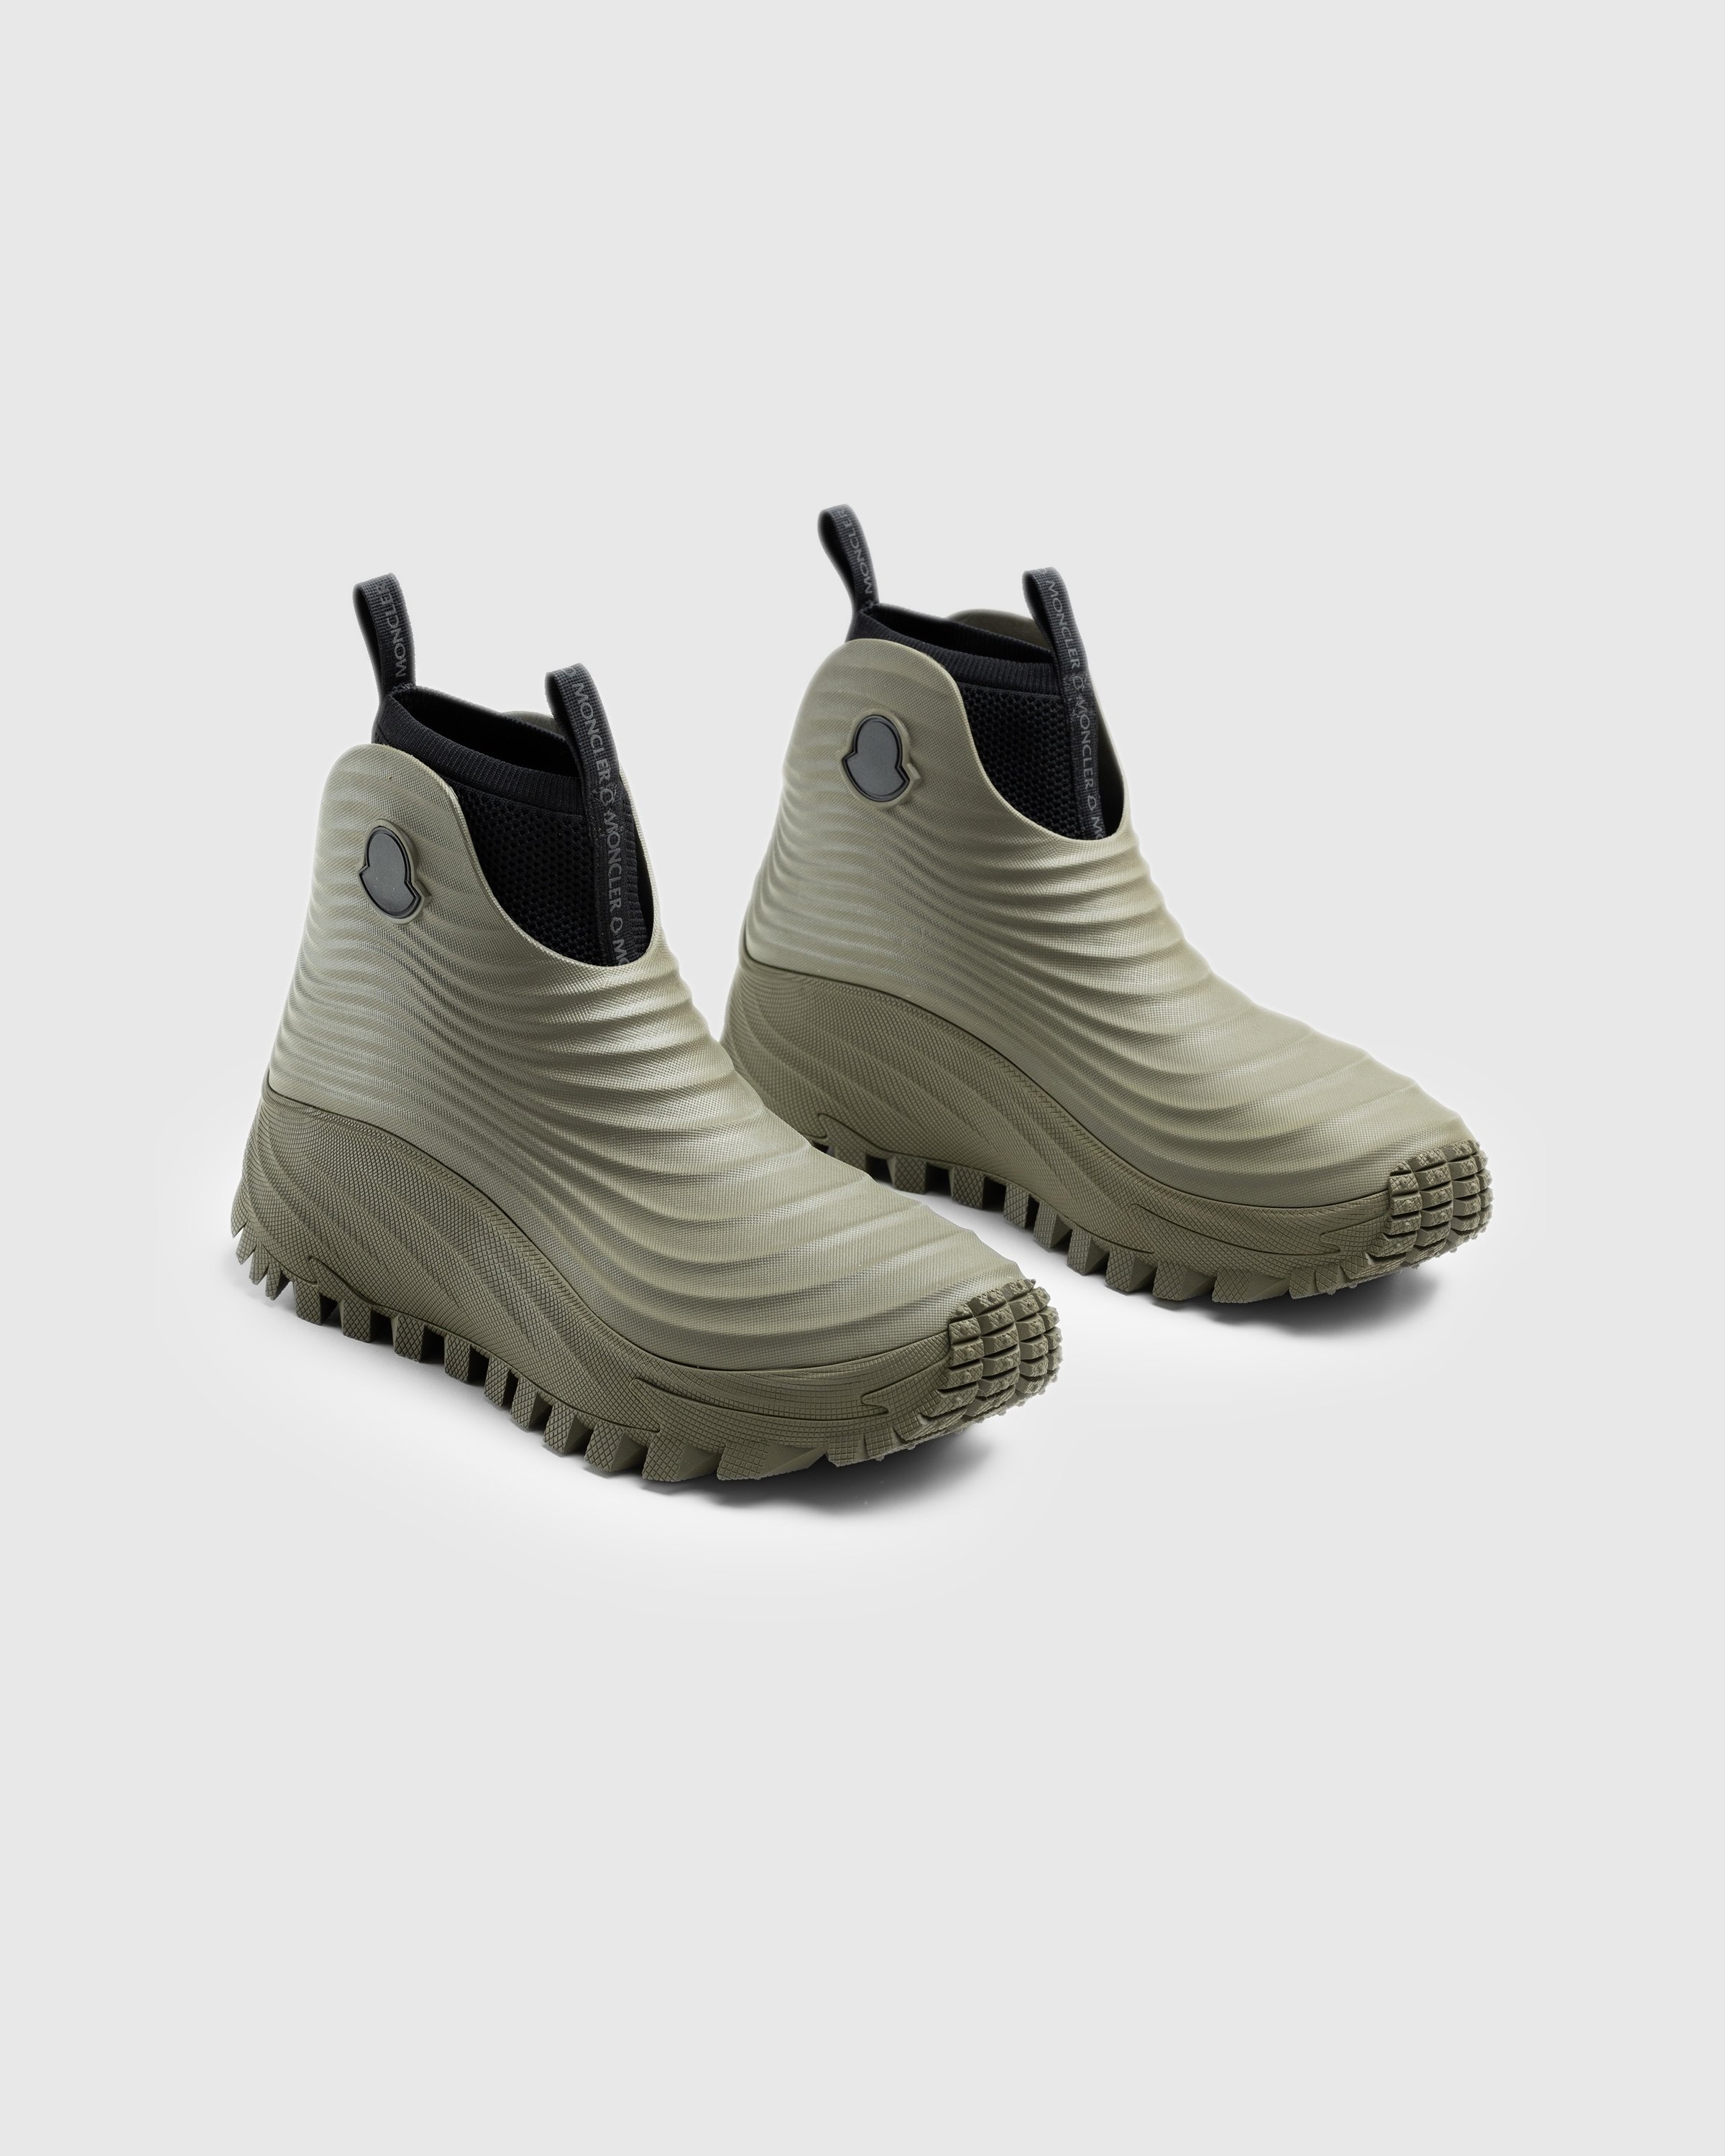 Moncler – Acqua High Rain Boots Khaki - Rubber Boots - Brown - Image 3